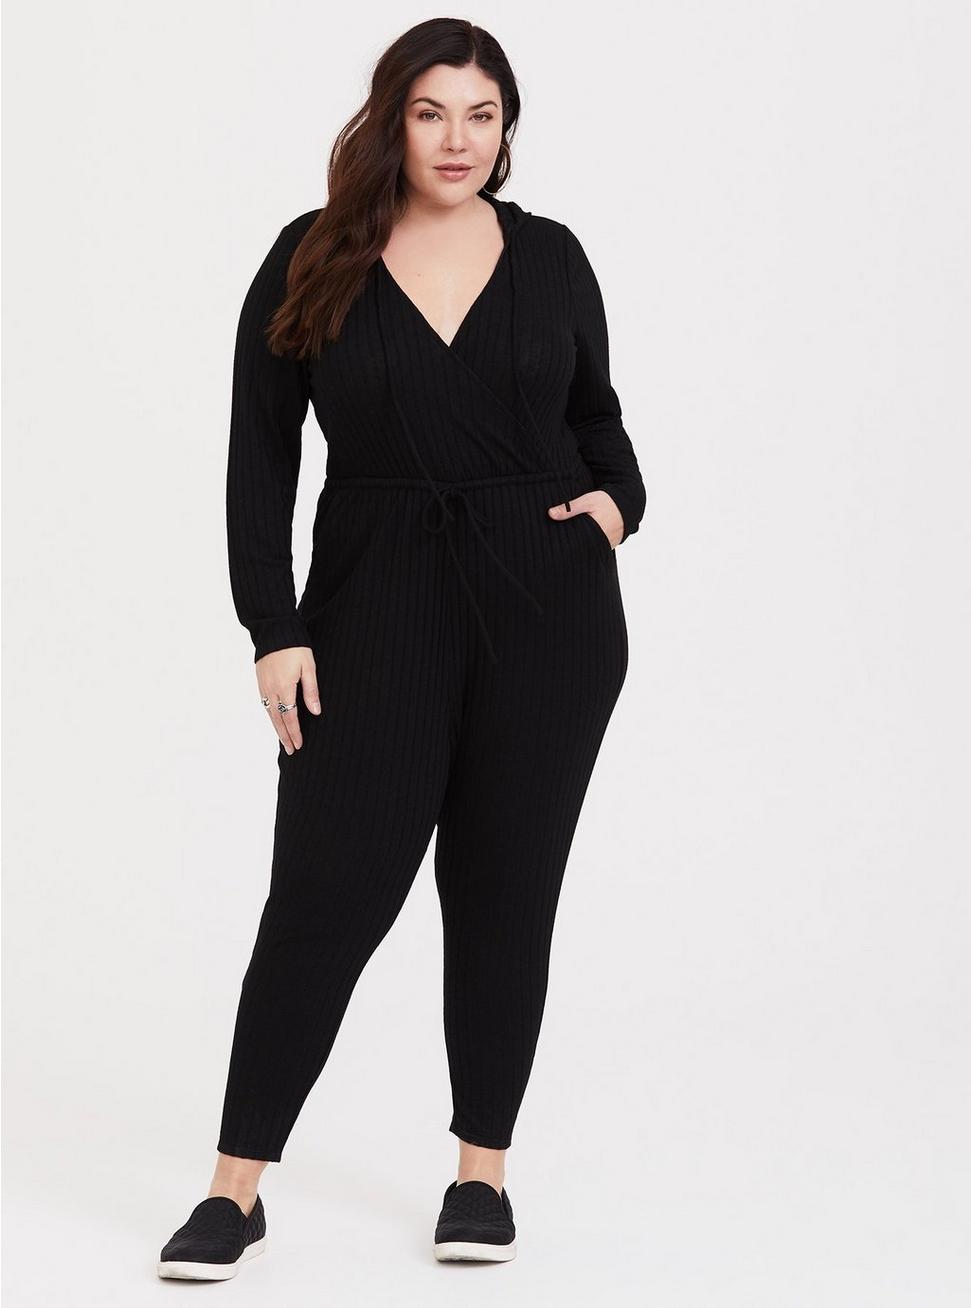 Plus Size - Black Long Sleeve Hacci Jumpsuit - Torrid